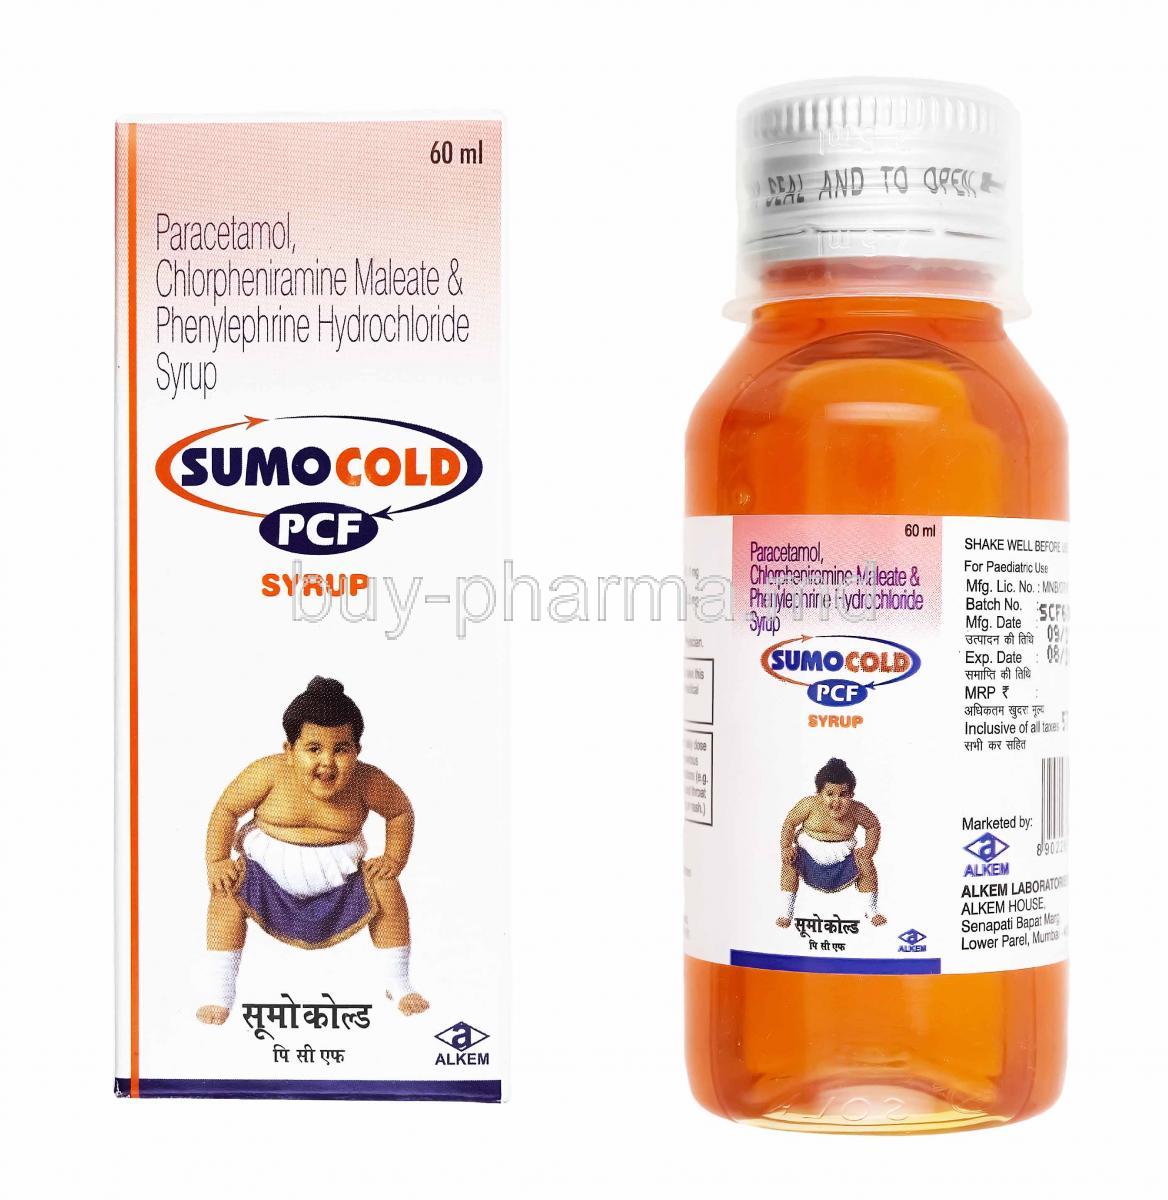 Sumo Cold PCF Syrup, Chlorpheniramine, Paracetamol and Phenylephrine box and bottle